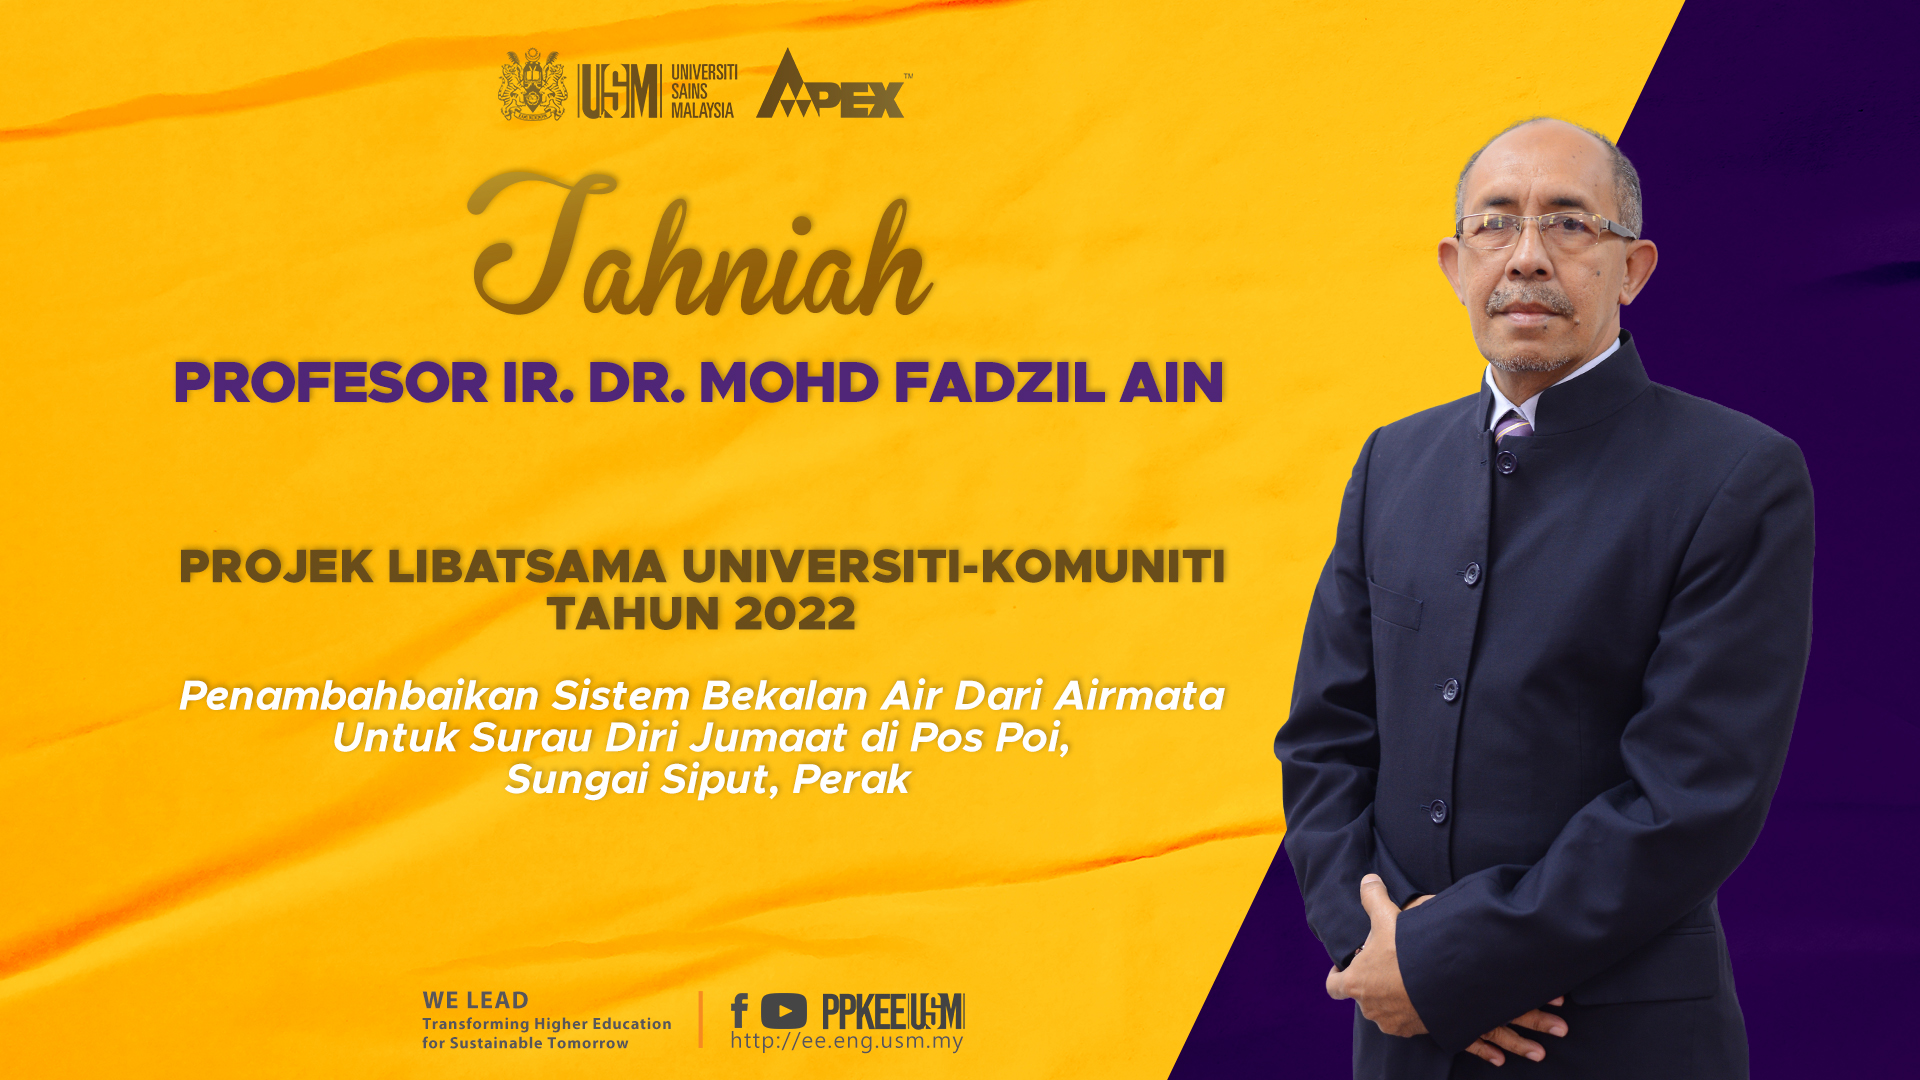 2022 0520 Poster 1920x1080 Tahniah Projek Libatsama Universiti Komuniti Tahun 2022 Prof Fadzil Ain